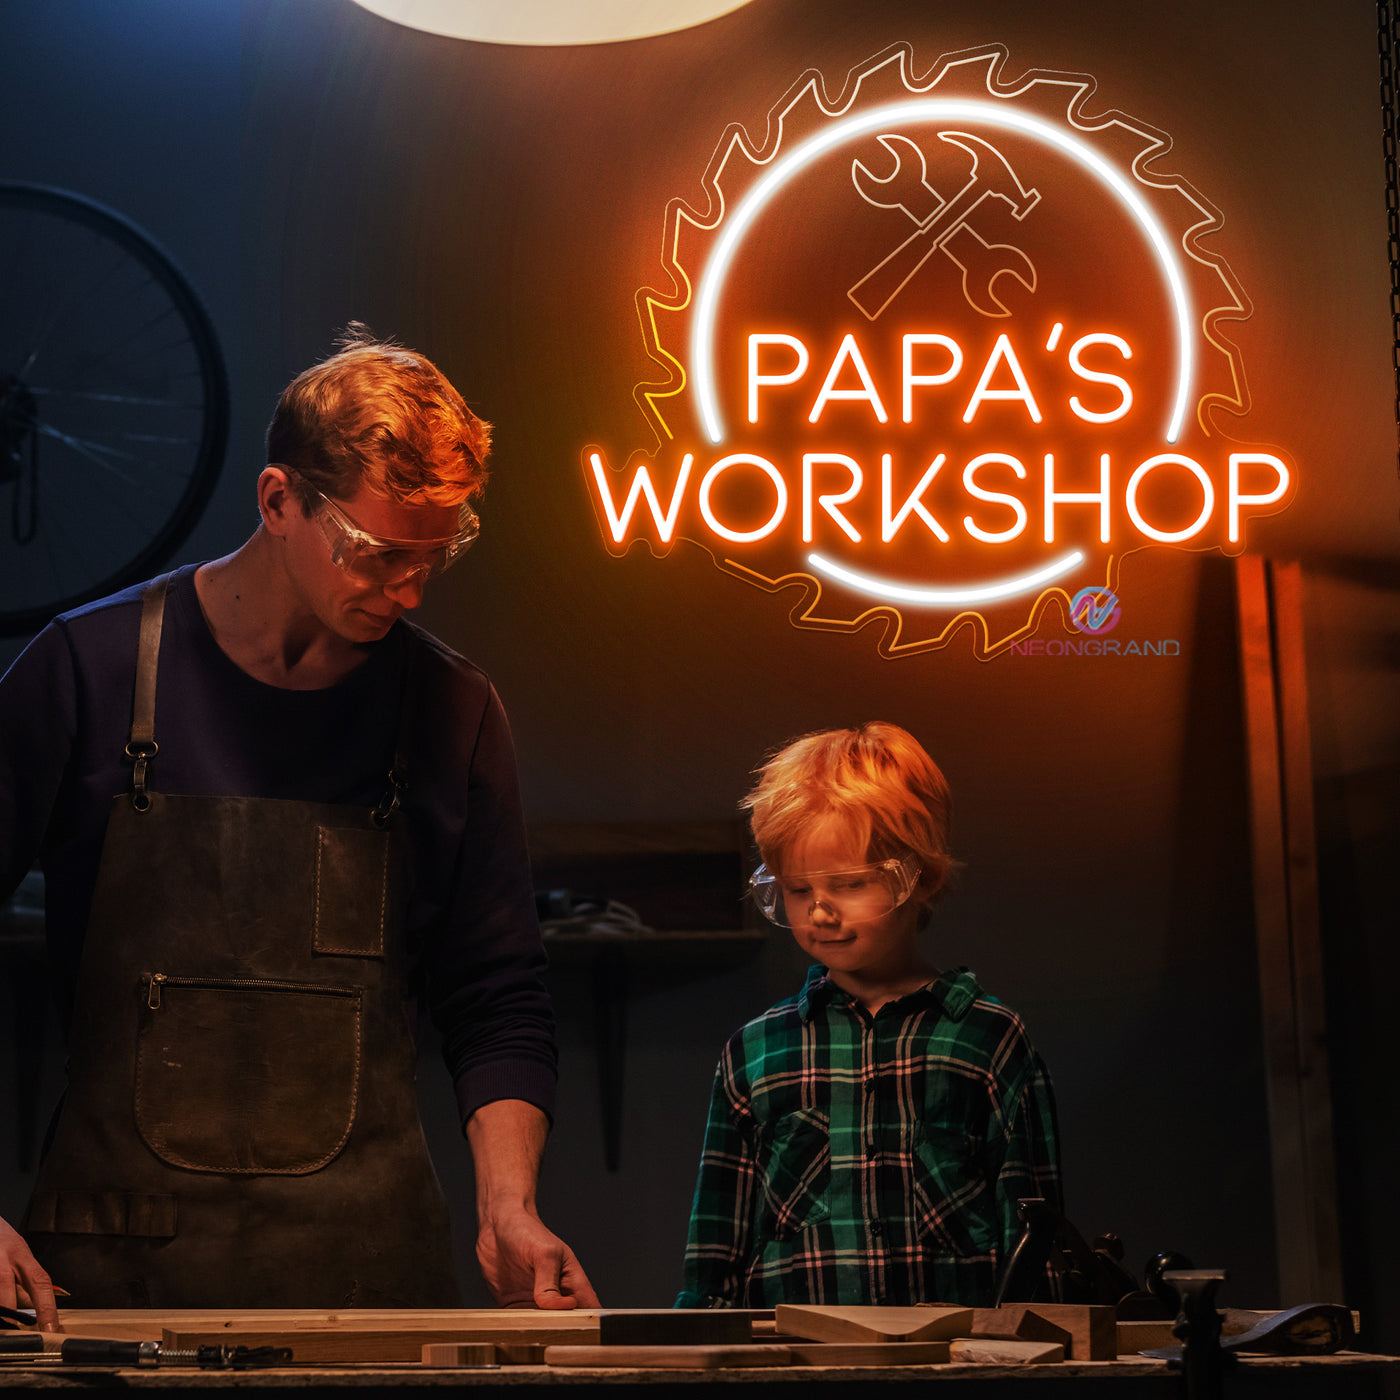 Custom Papa Workshop Neon Sign For Dads Led Light orange